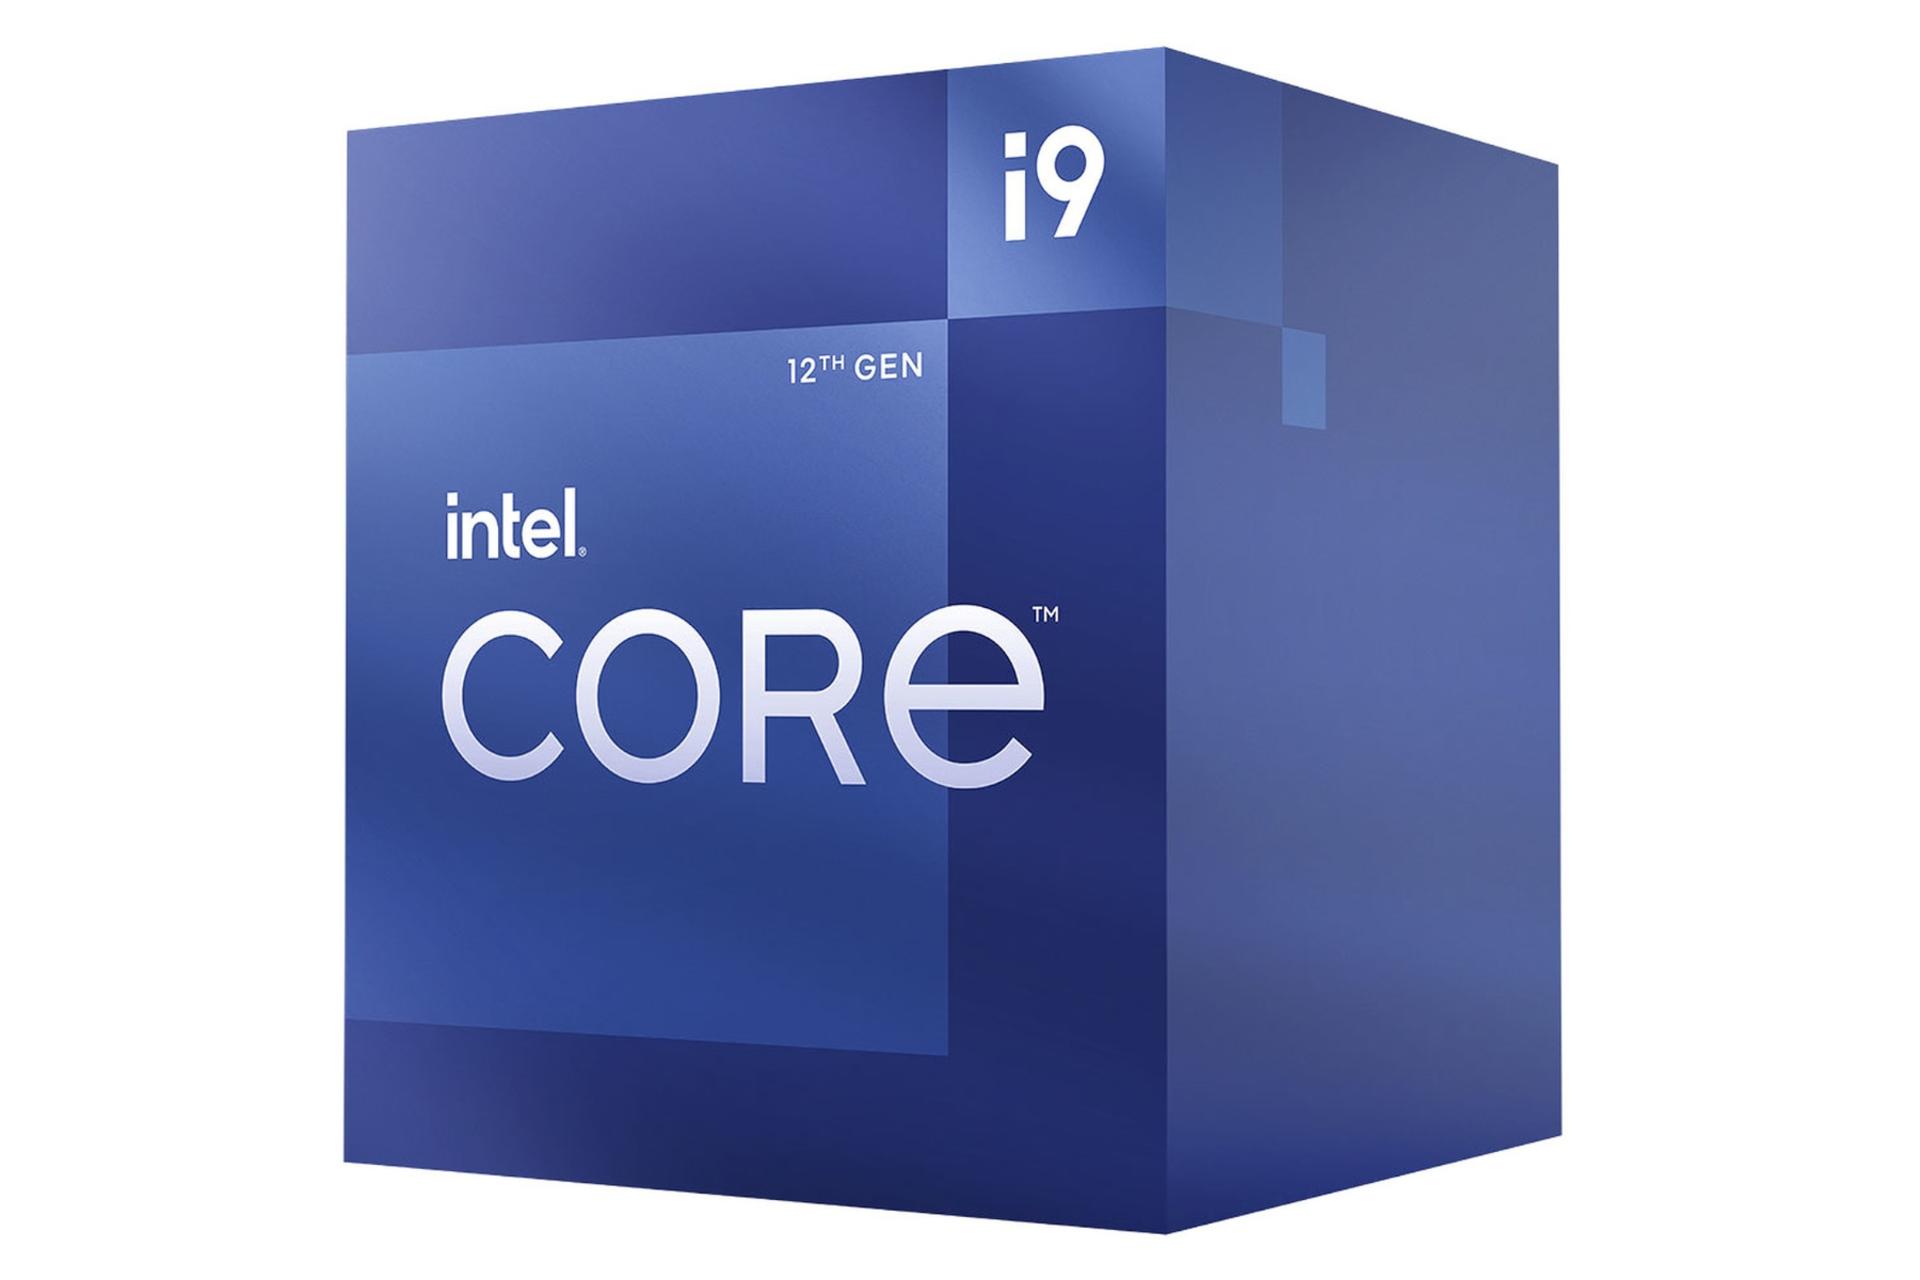 نمای راست جعبه پردازنده اینتل Core i9 نسل دوازدهم / Intel Core i9 12th Gen